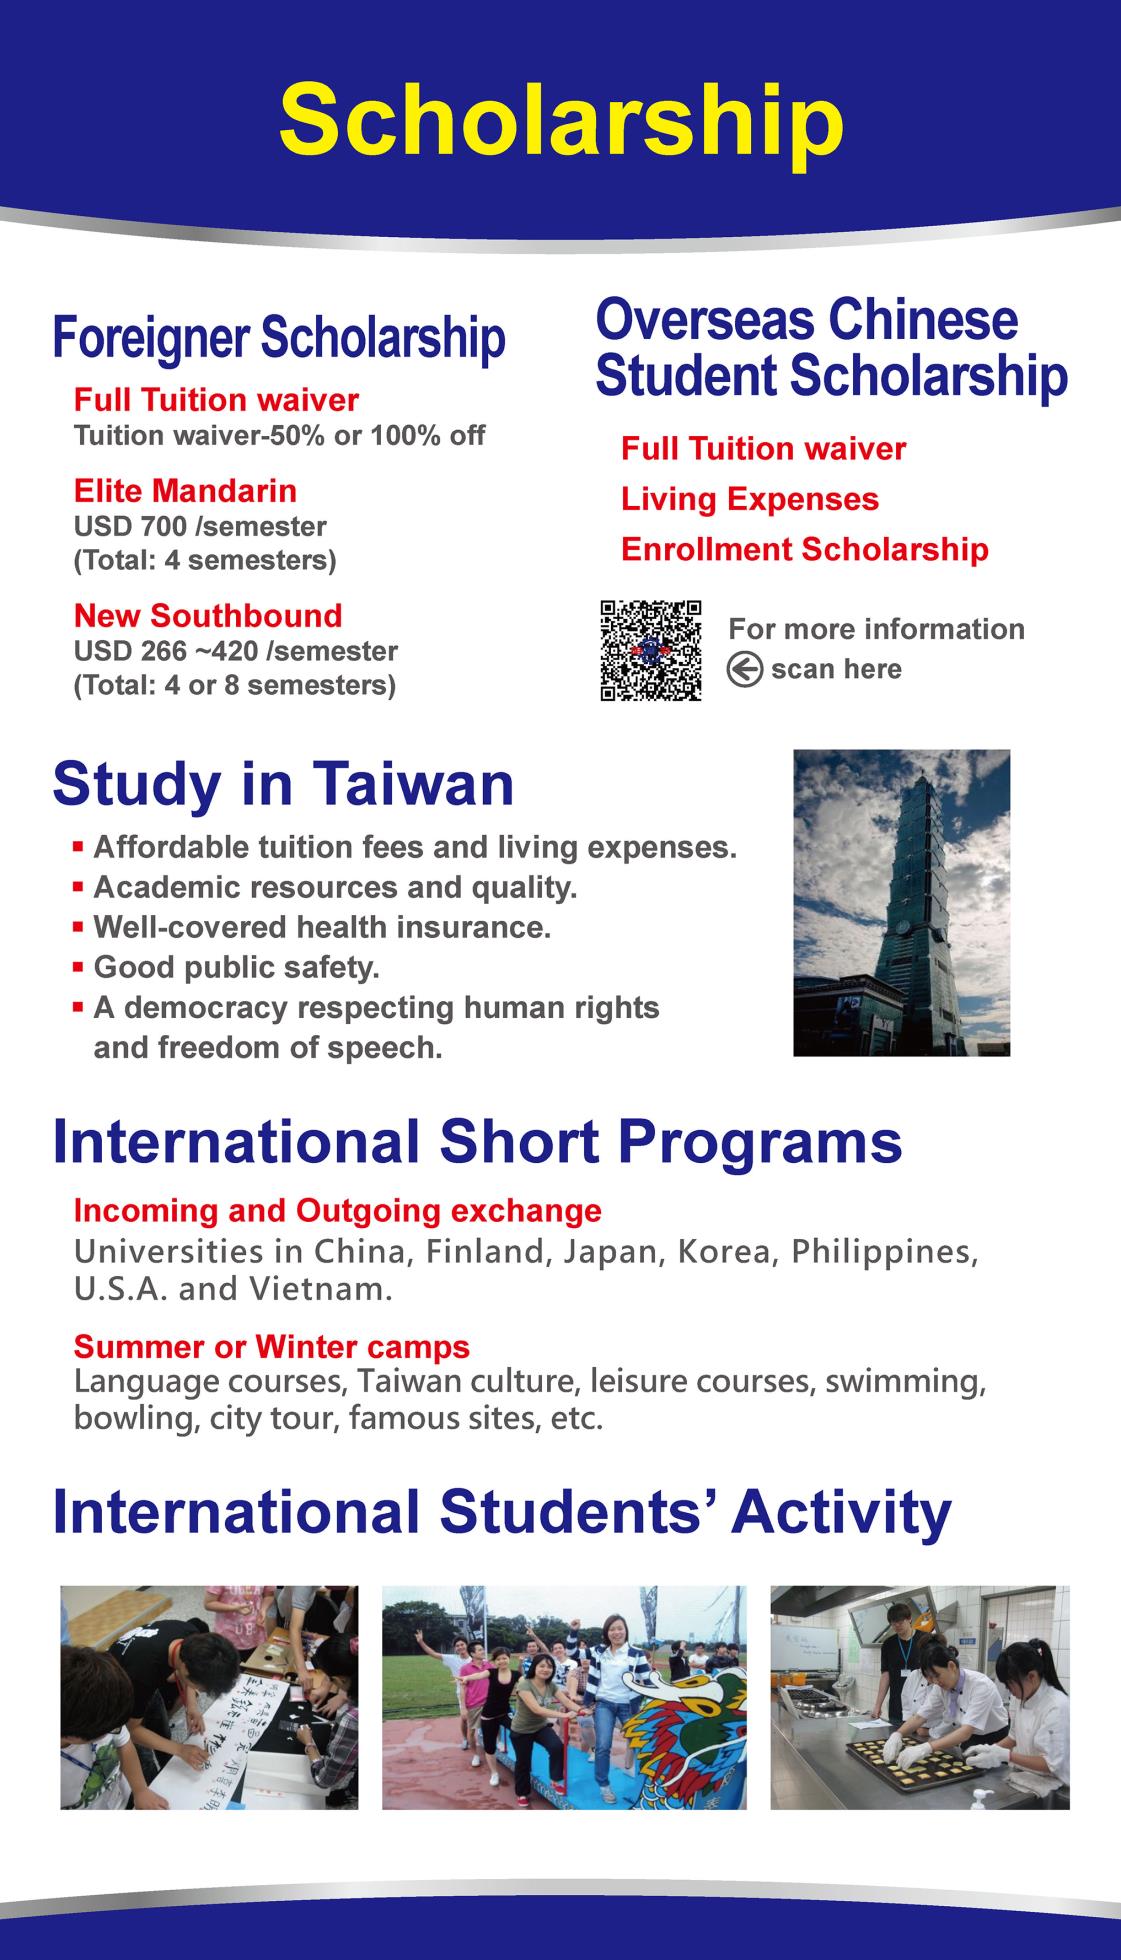 明新國際教育與交流中心-2021年泰國教育展電子海報-頁面_4